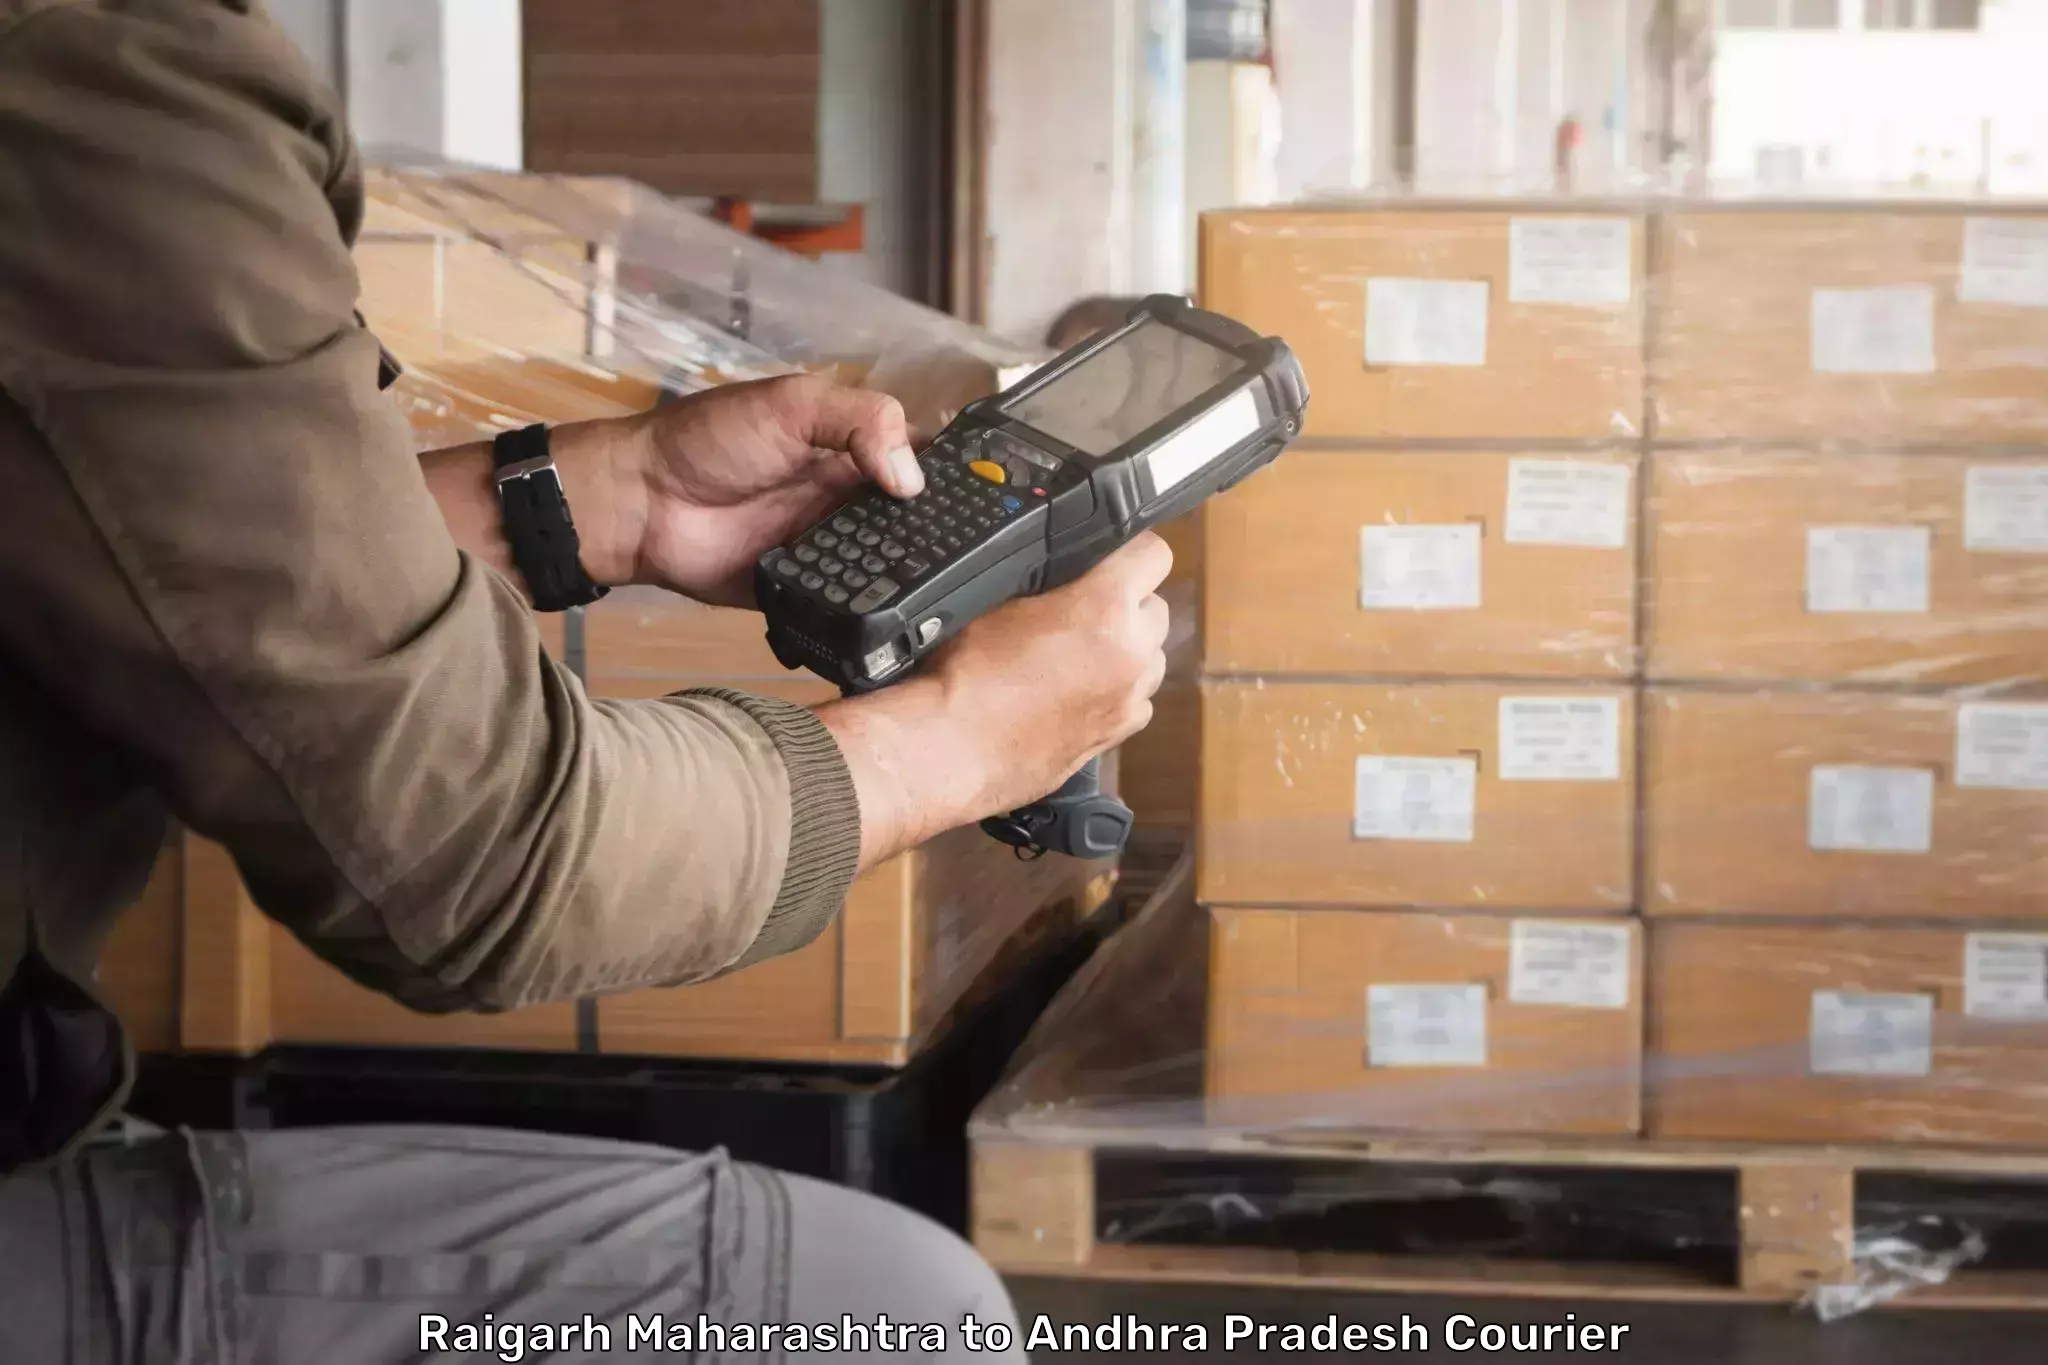 Courier service innovation Raigarh Maharashtra to Gooty